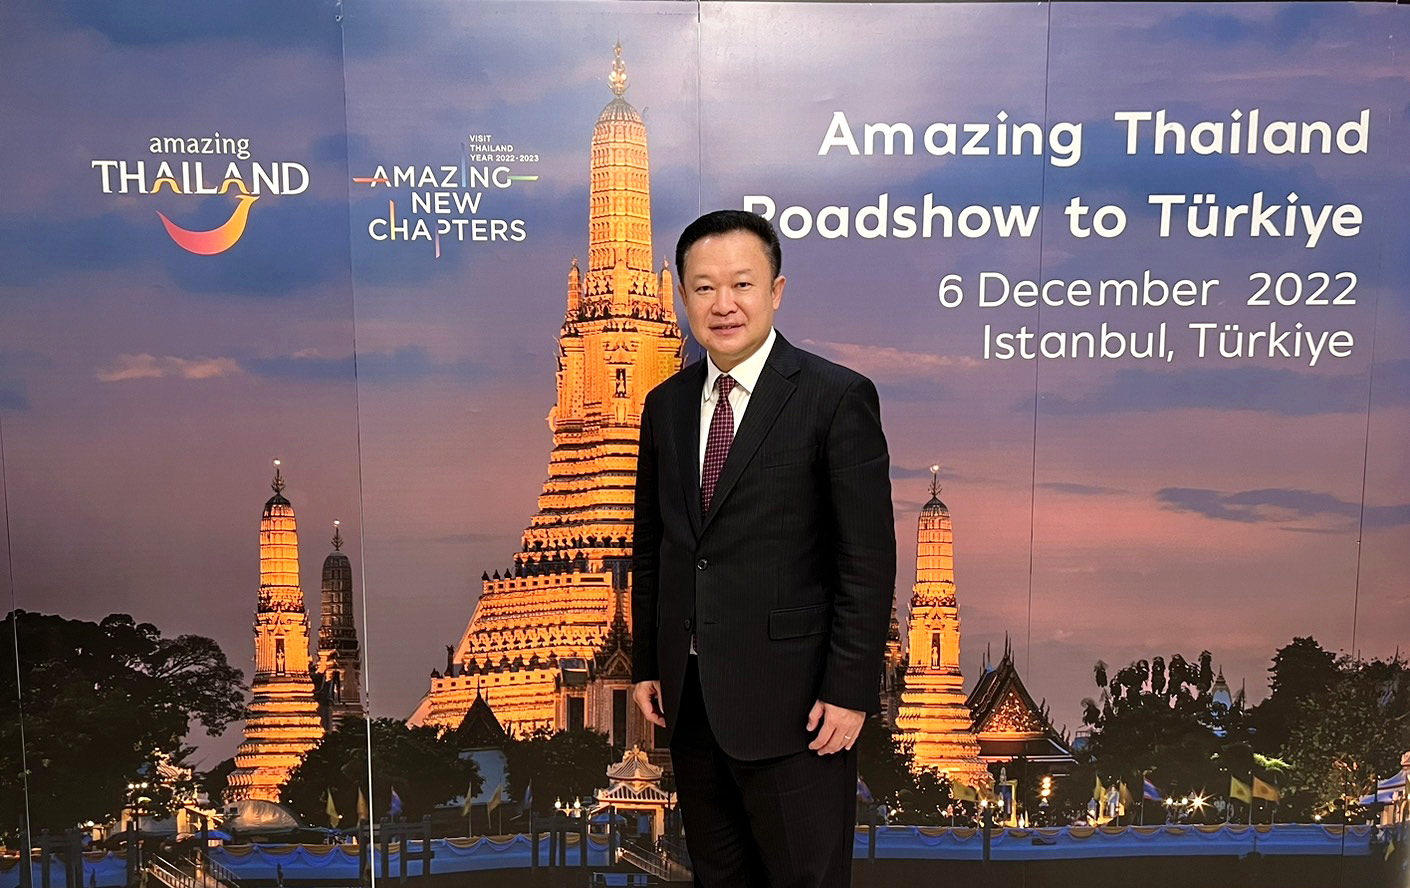 ททท. รุกตลาดตุรกี จัดงาน Amazing Thailand Roadshow to Turkiye and Hungary 2022 ณ เมืองอิสตันบูล สาธารณรัฐตุรกี